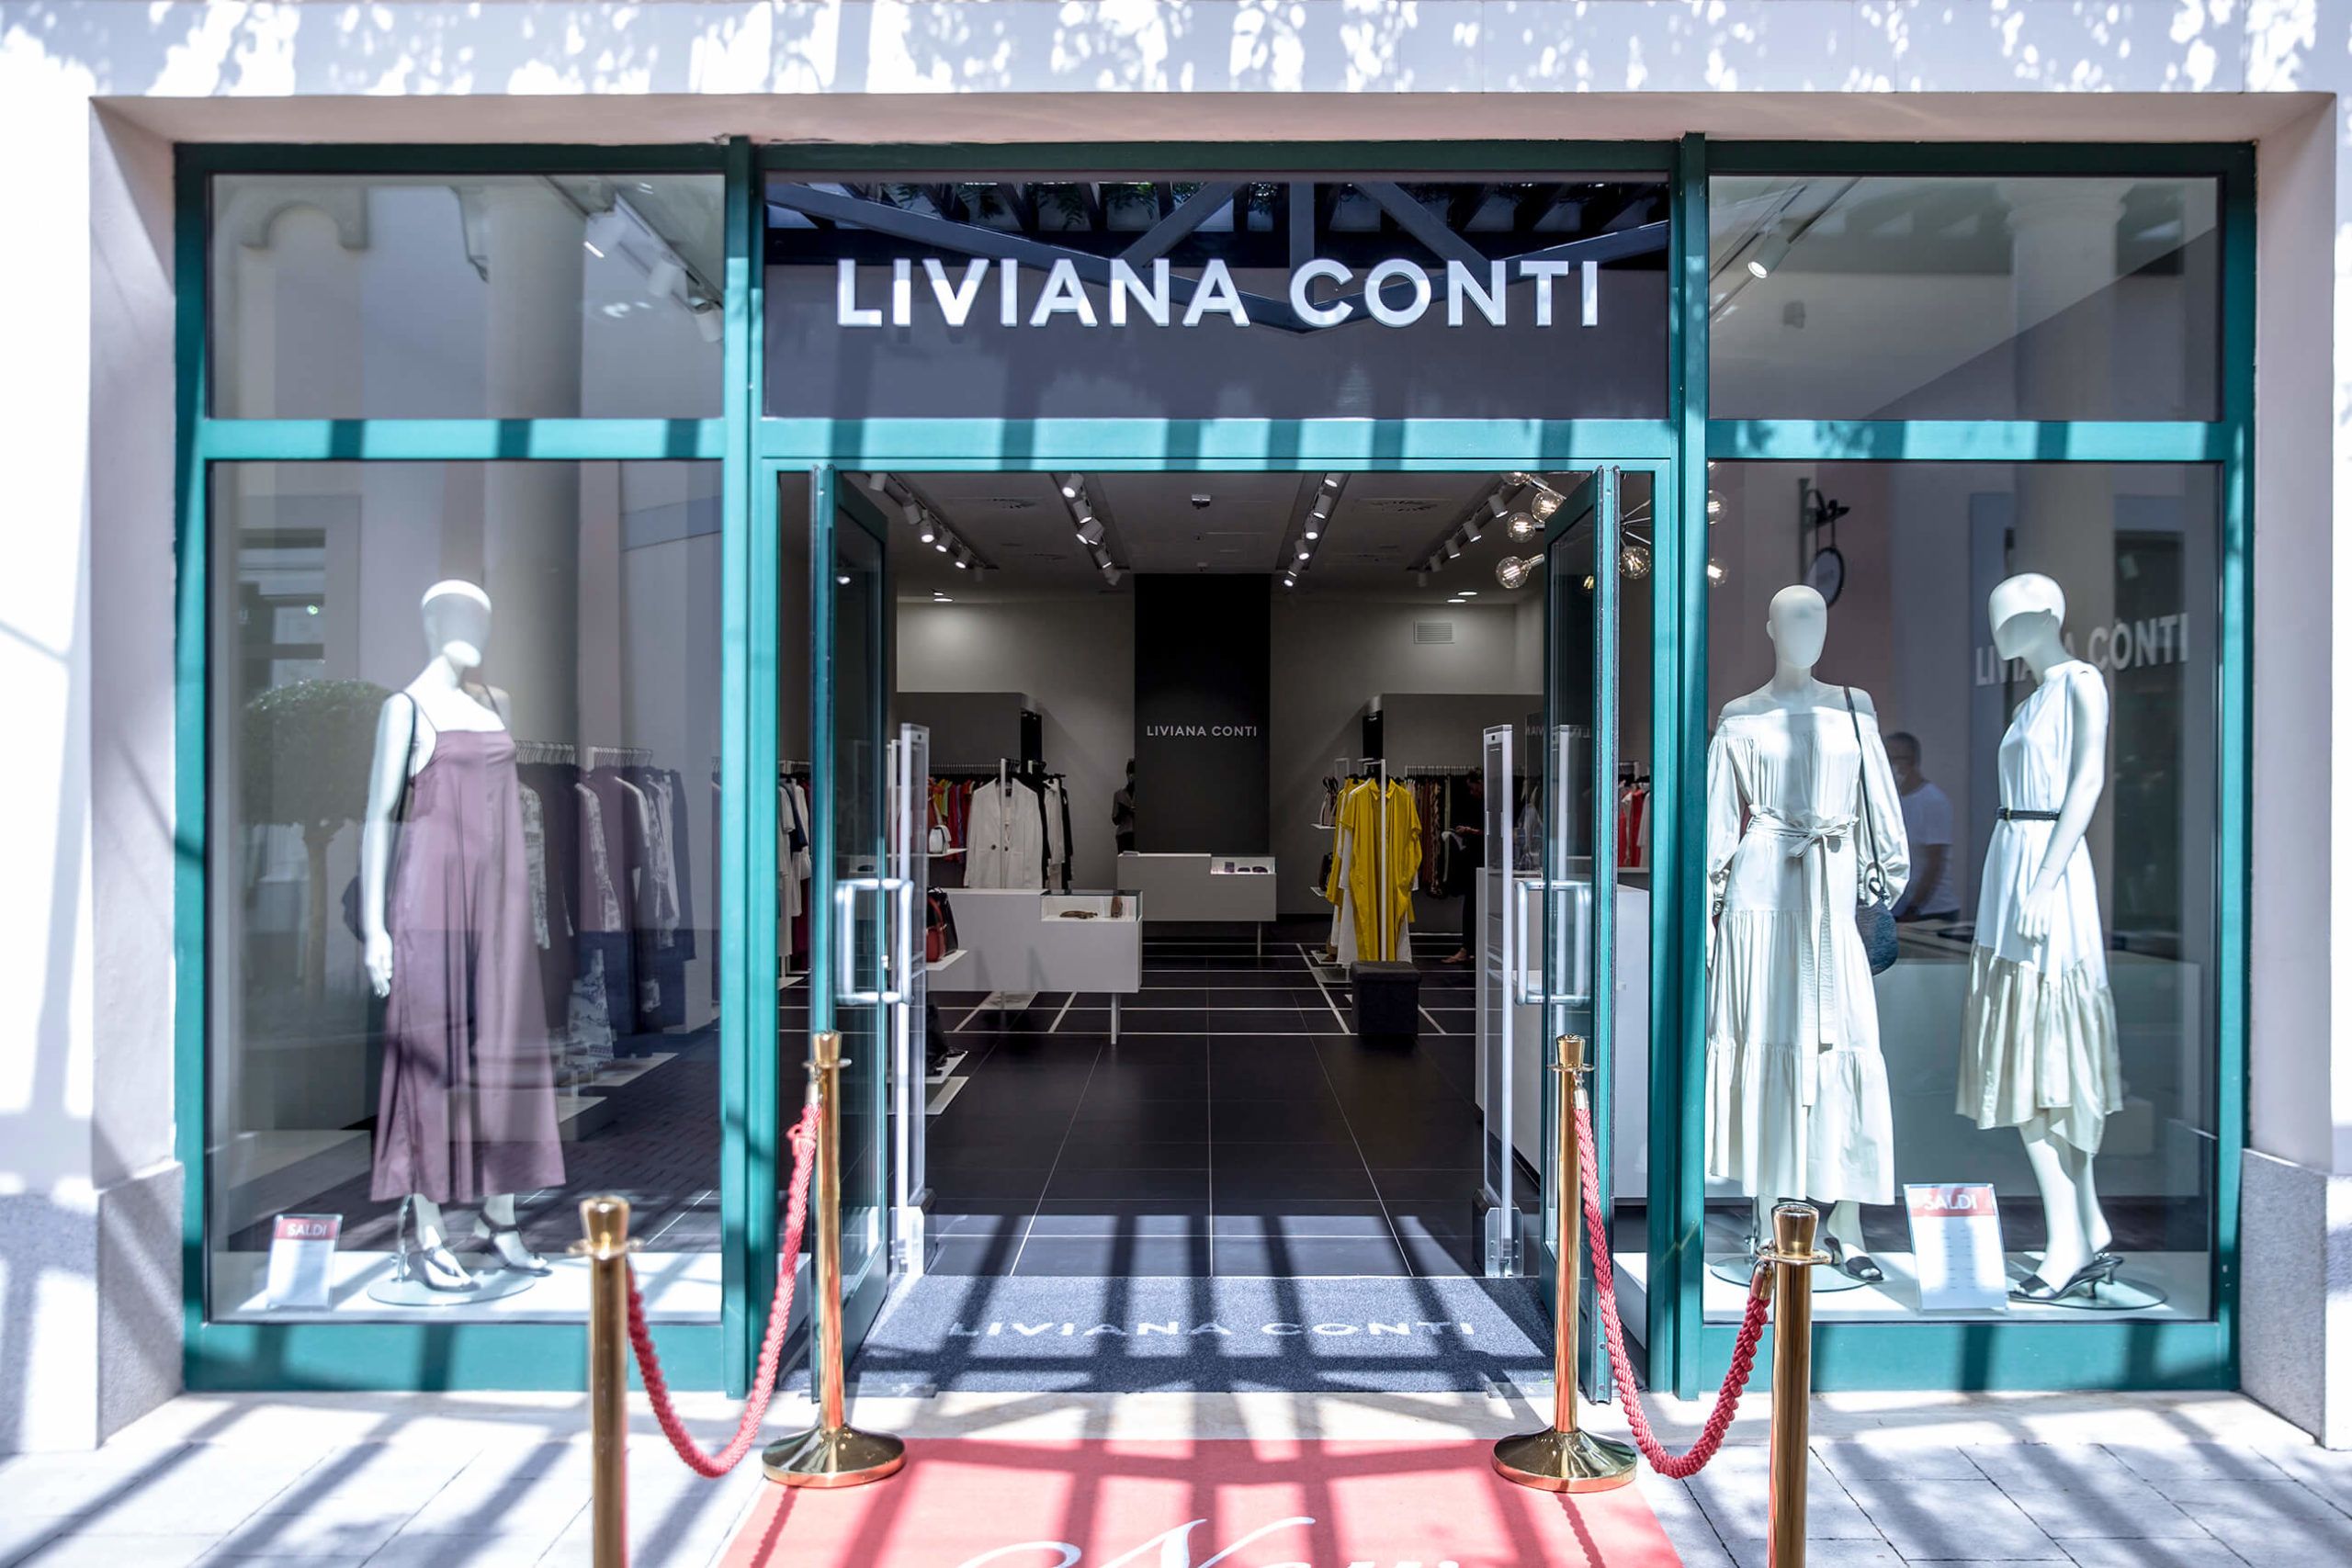 Vetrine per il negozio di Liviana Conti